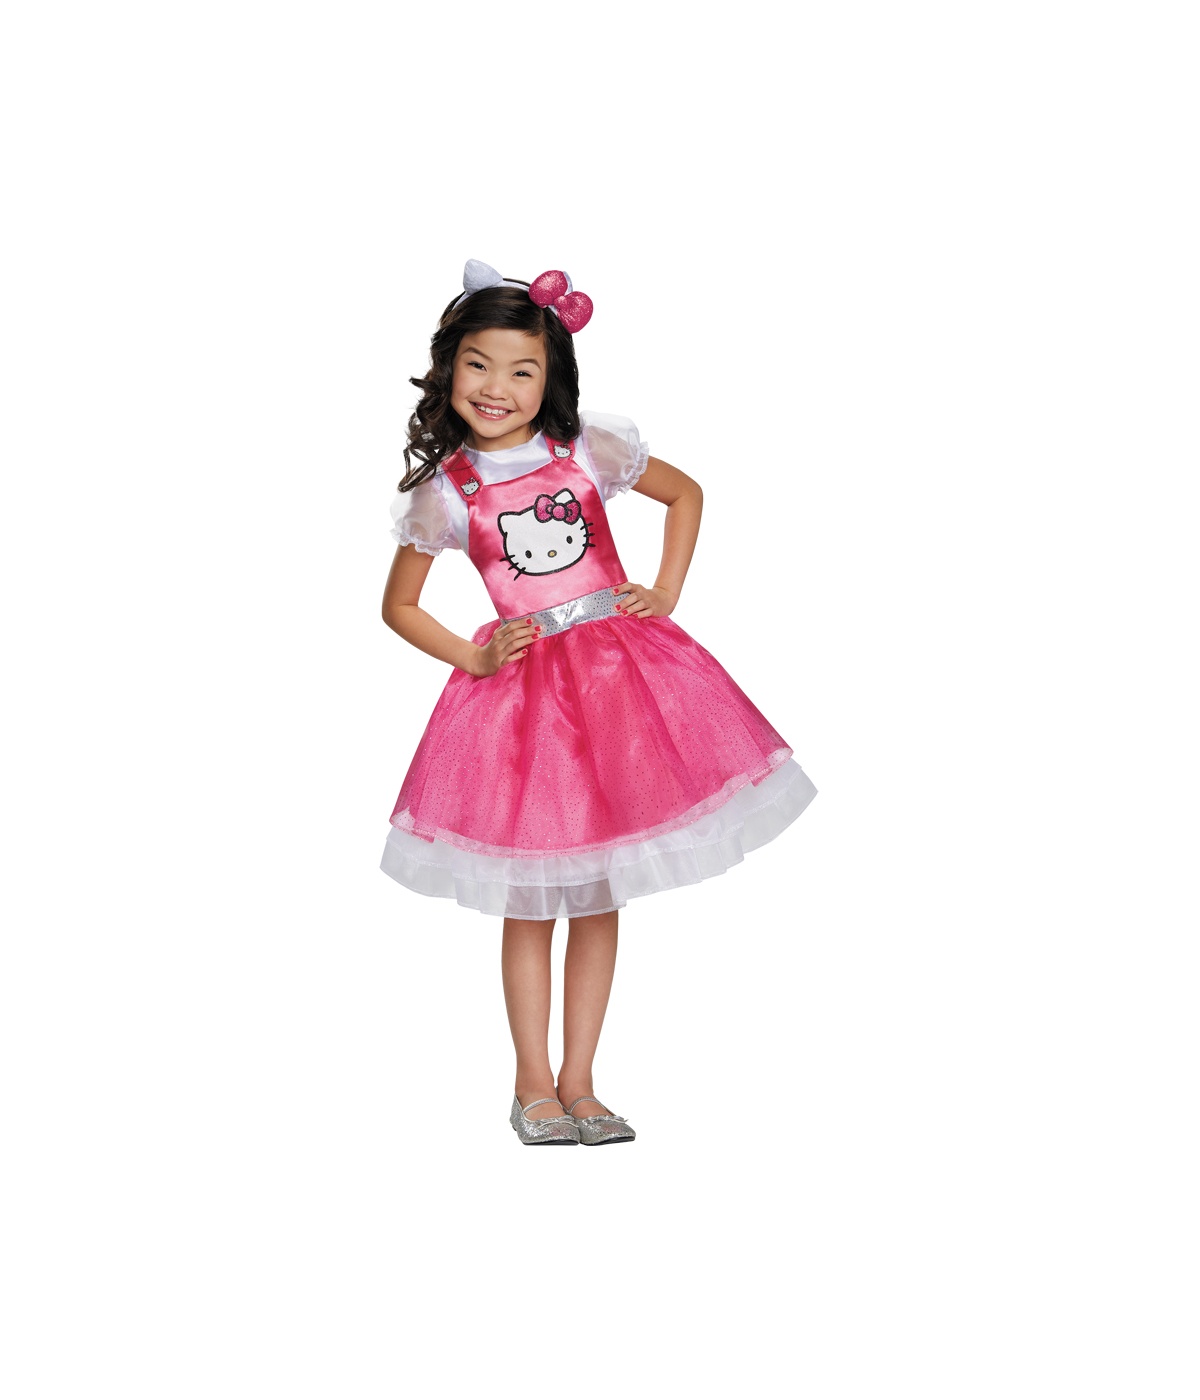  Girls Hello Kitty Costume